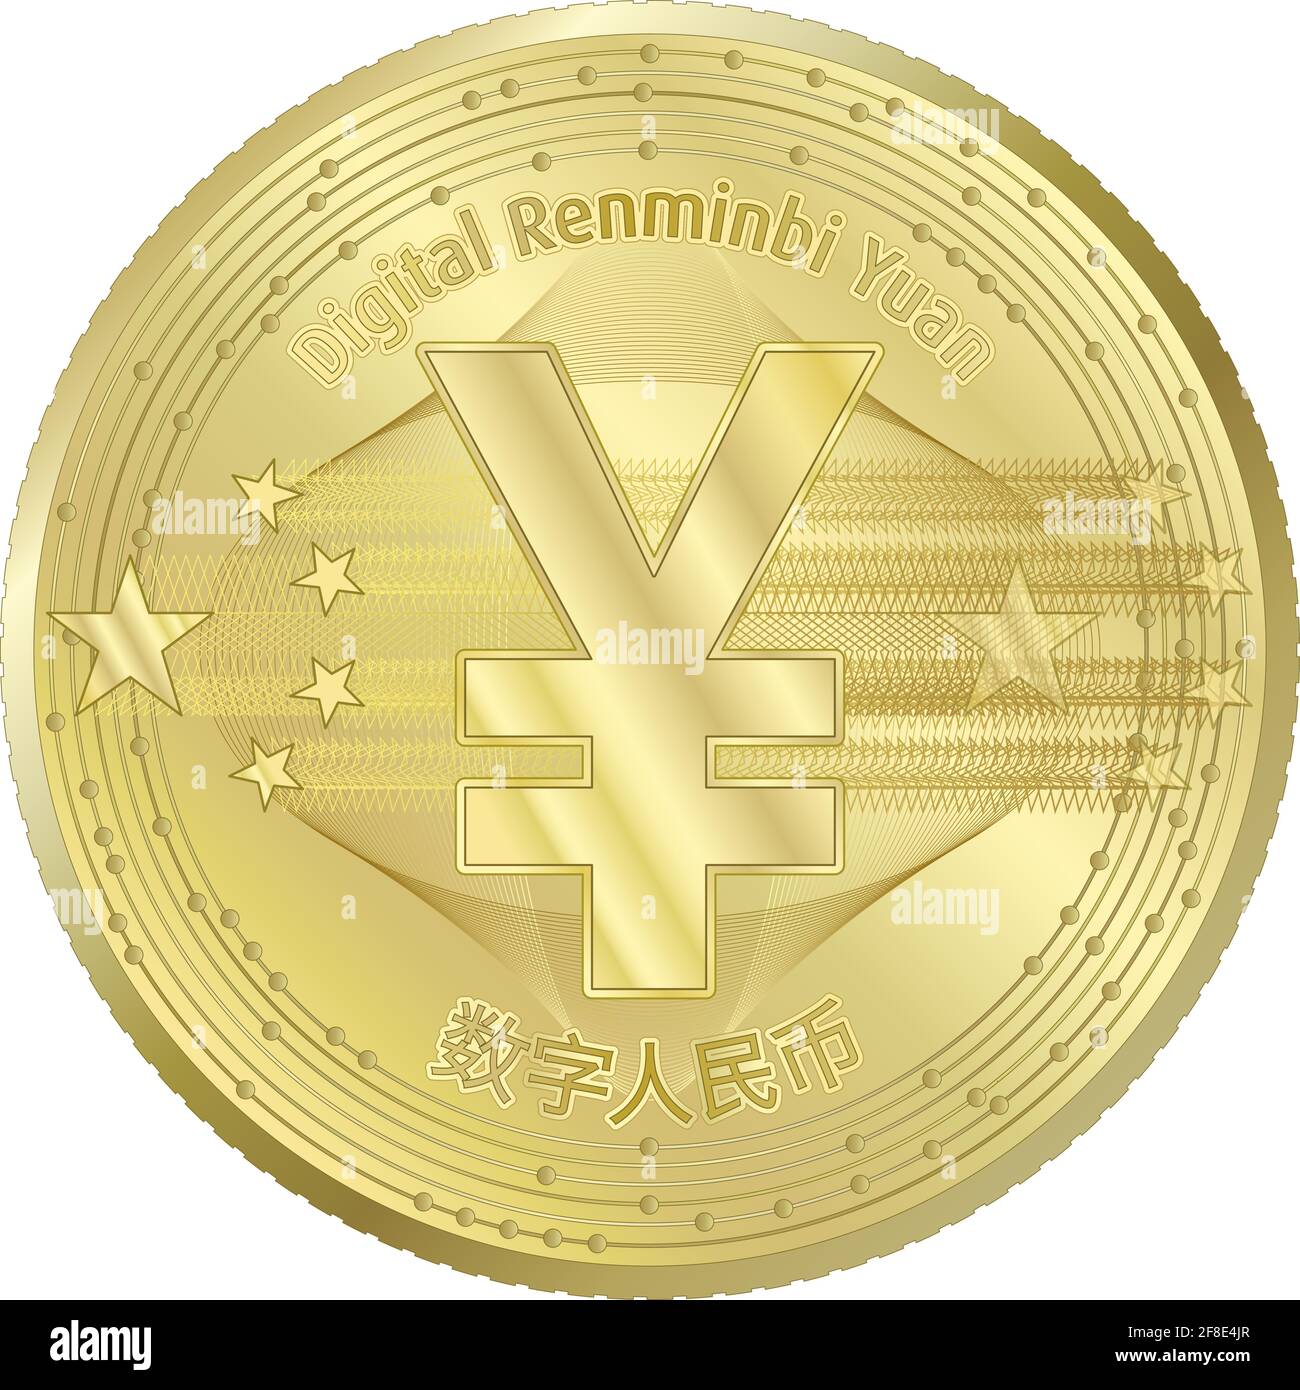 Kryptowährung Digital Yuan Renminbi Münze Fantasy-Design, Vektor-Illustration Stock Vektor